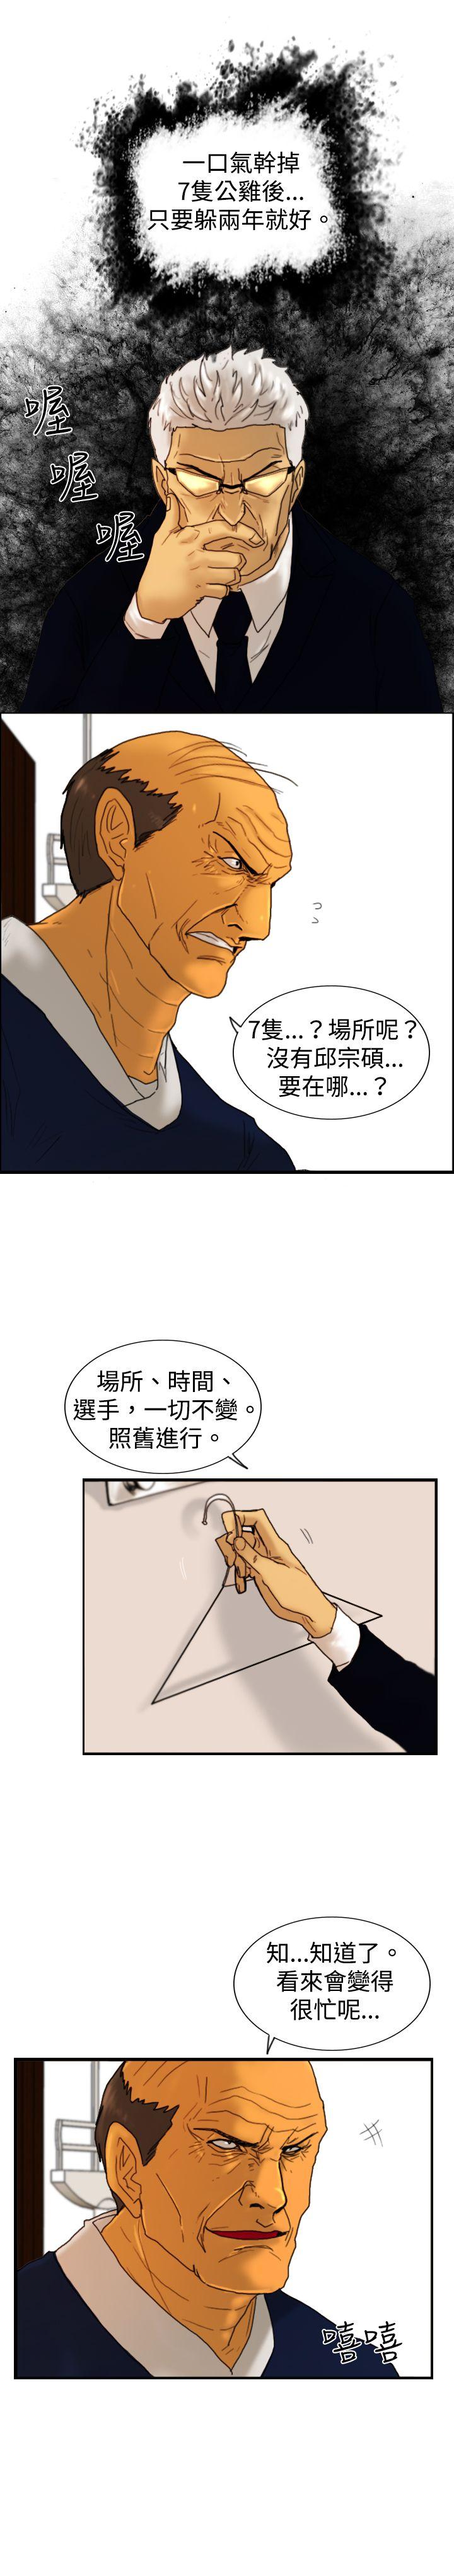 韩国污漫画 覺醒(完結) 第16话疯子 21